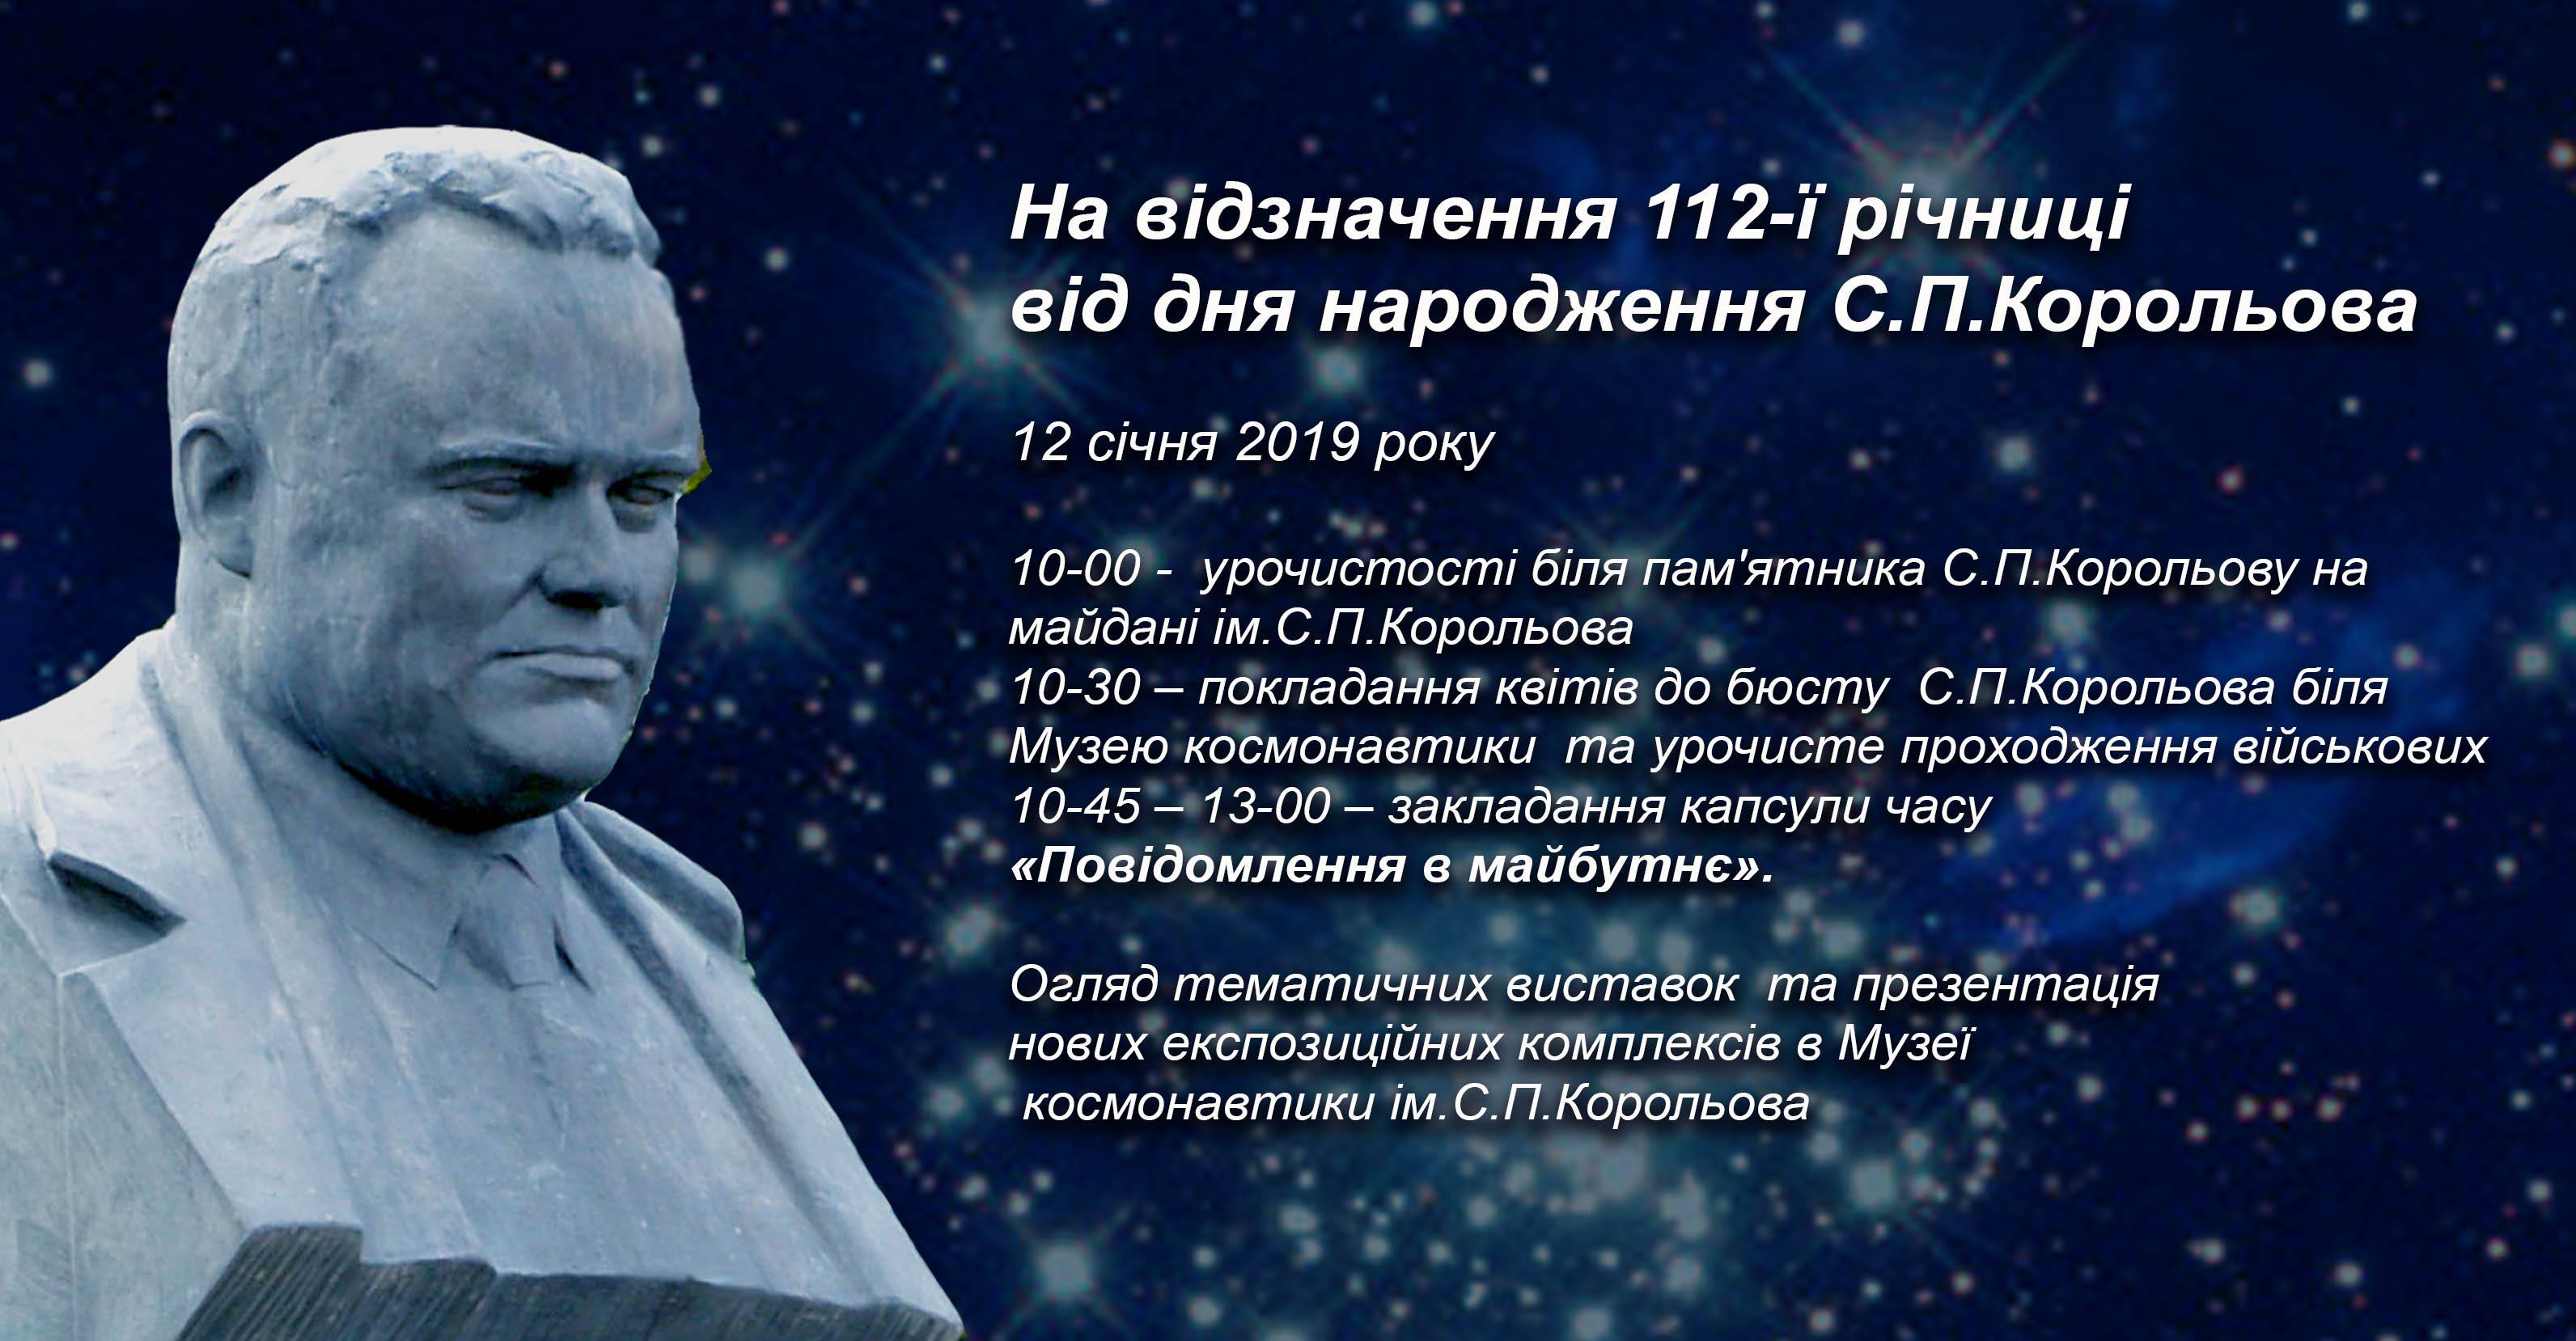 Запрошуємо всіх на відзначення 112-ї річниці від дня народження С.П. Корольова